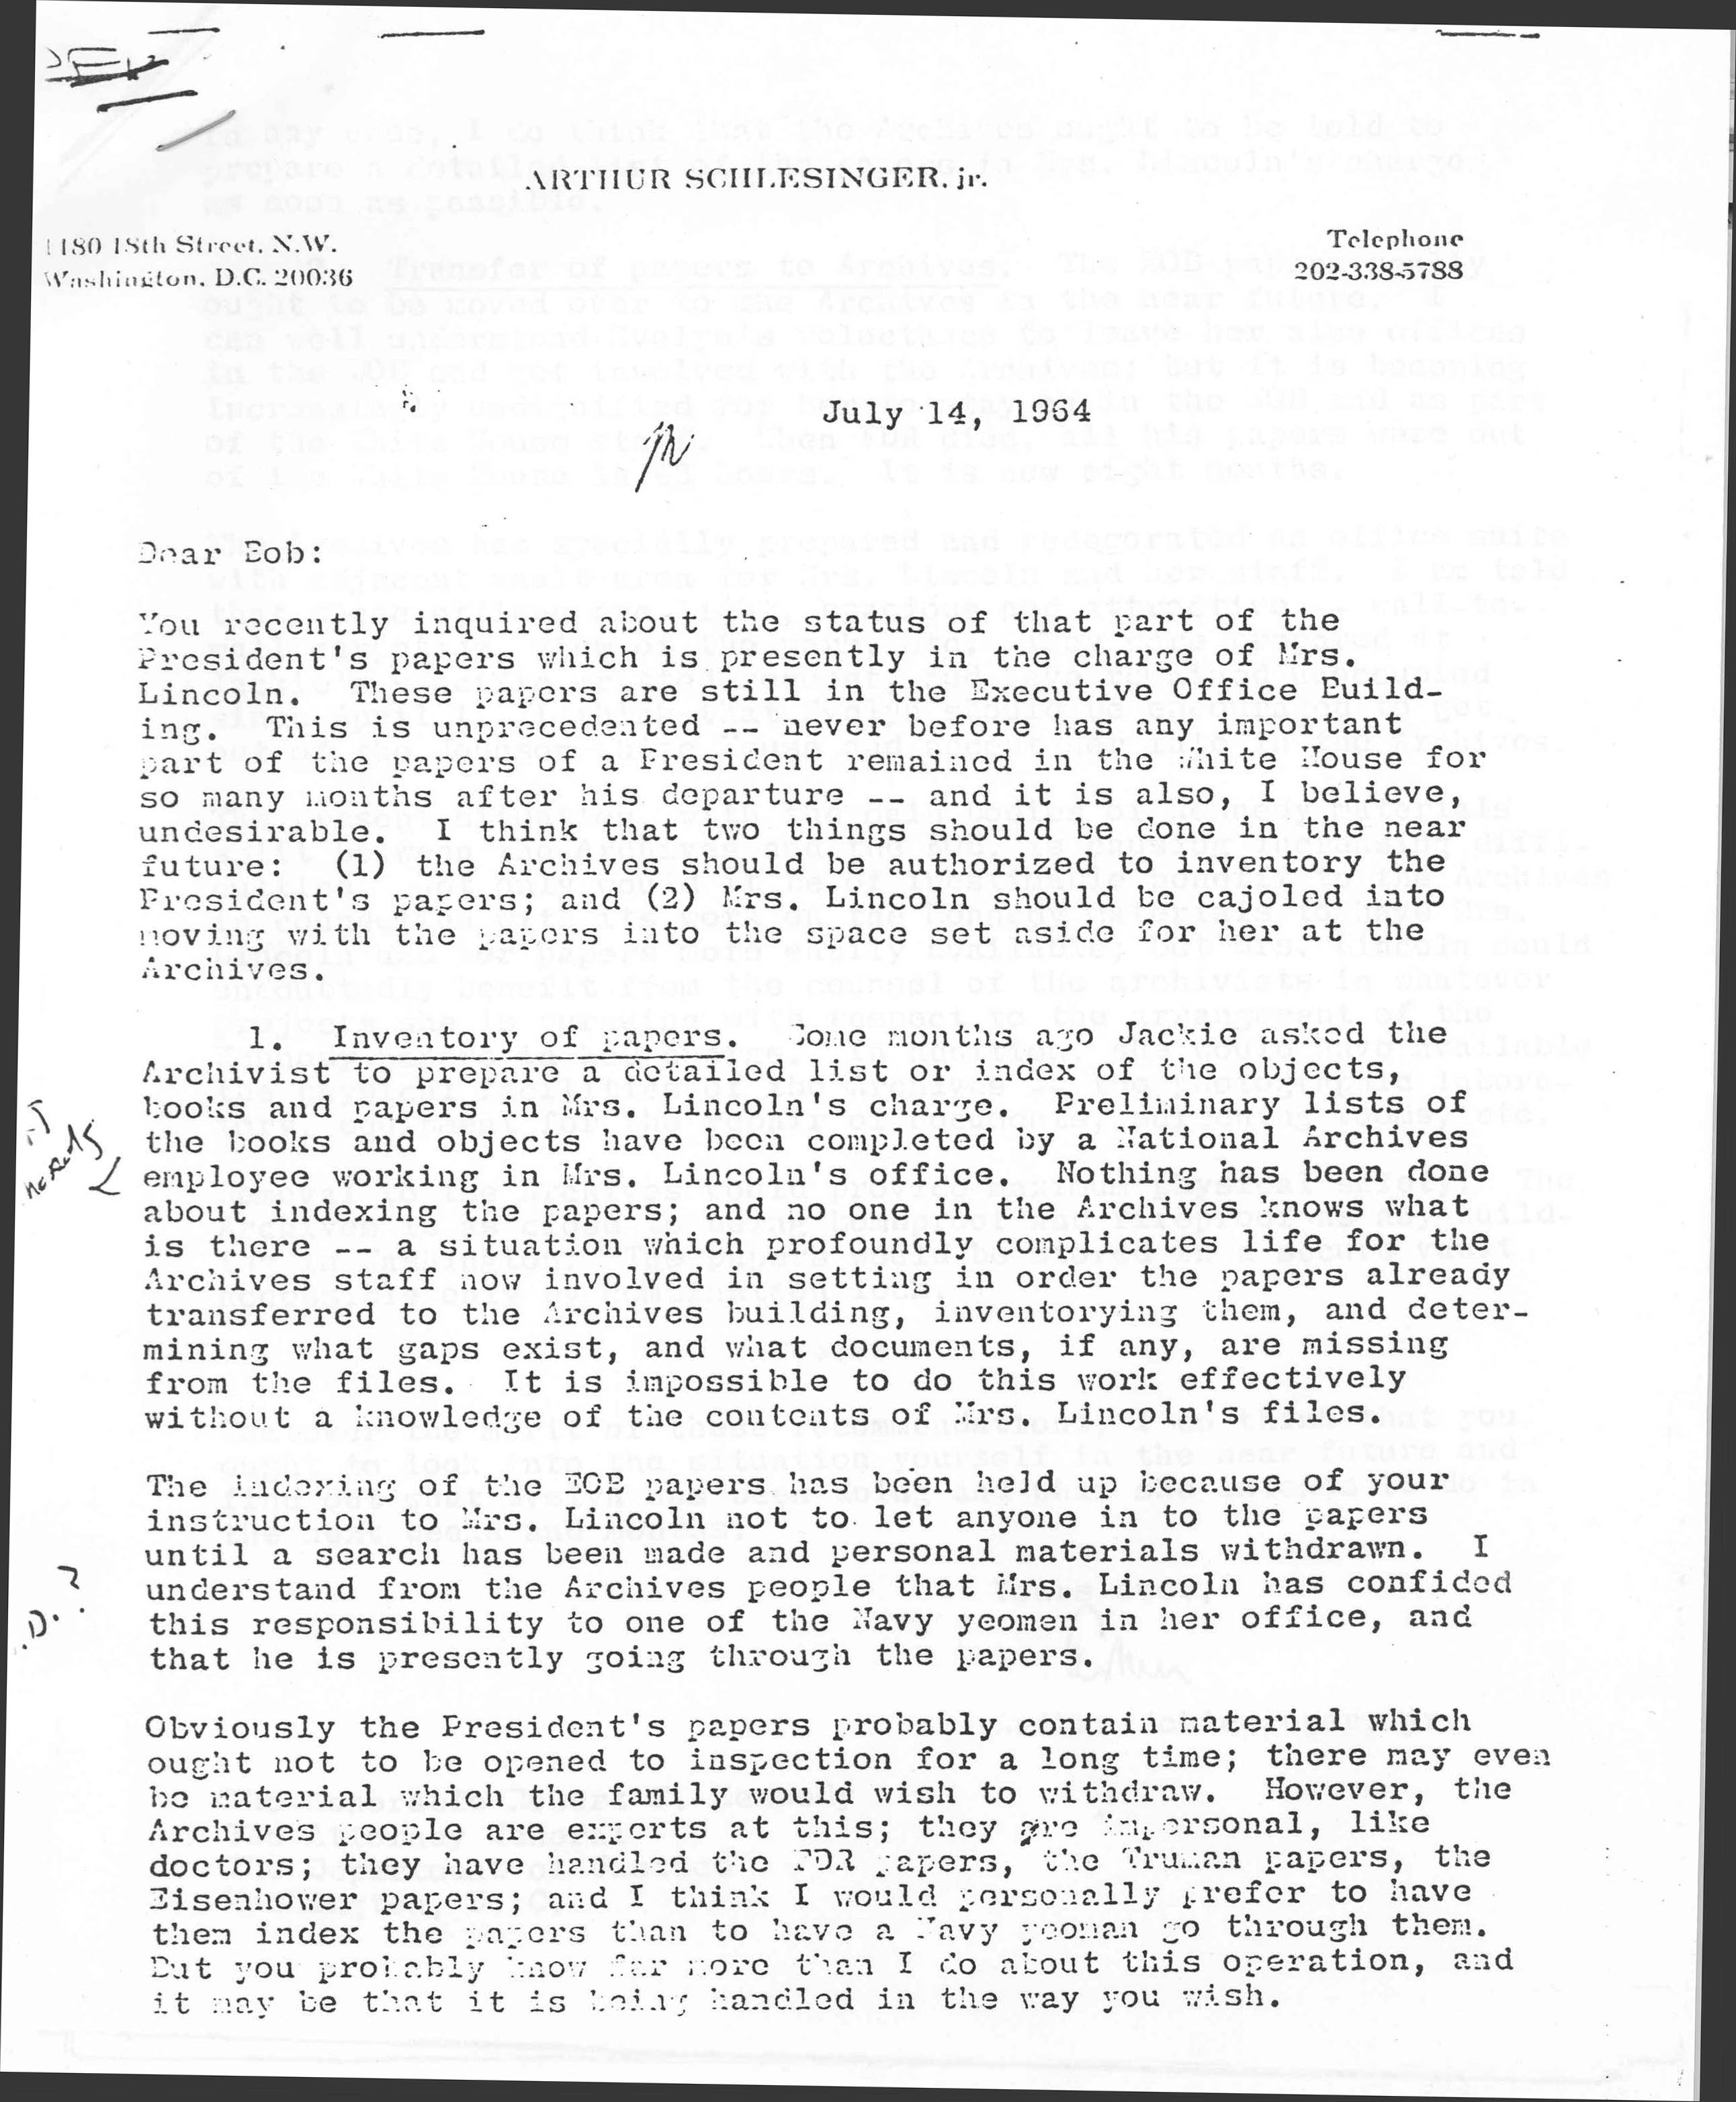 Letter from Arthur Schlesinger regarding the status of JFK's papers